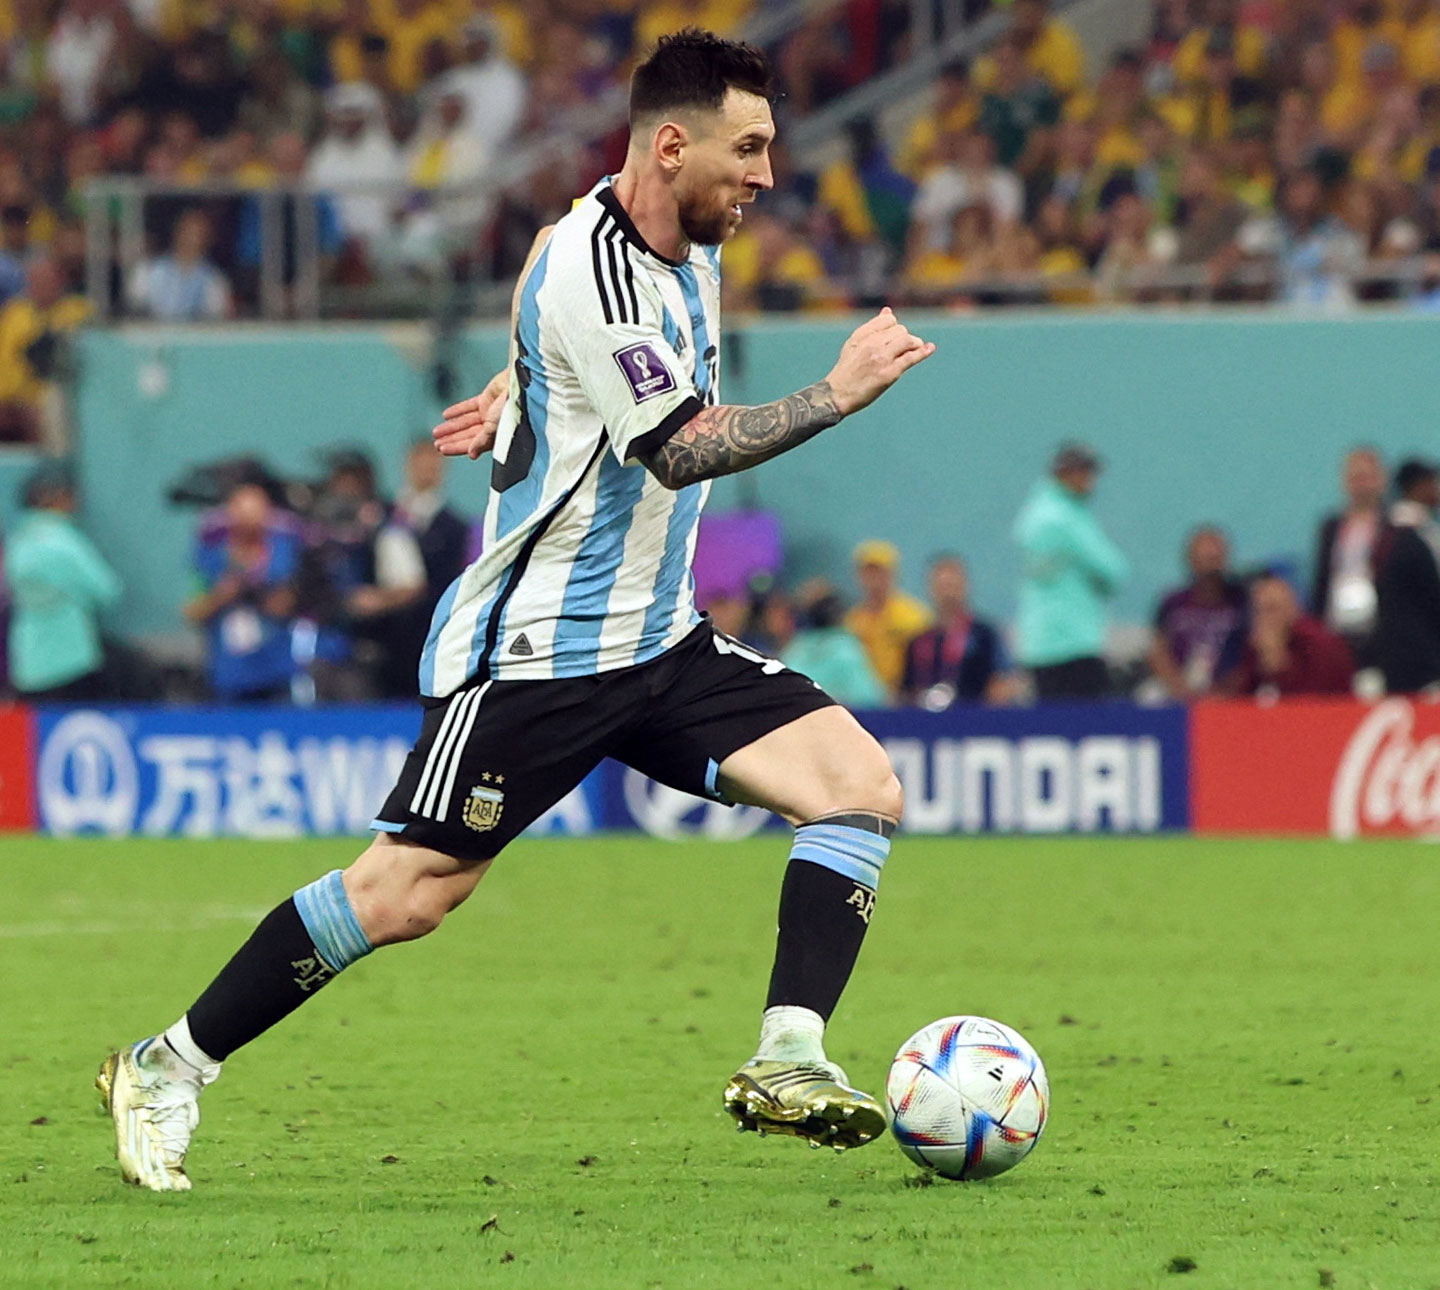 Hãy đến với Hà Lan và Argentina, hai đội bóng sở hữu những cầu thủ tài năng và một trong số đó chính là Messi. Bạn sẽ được thưởng thức những tình huống bóng đá hấp dẫn và đầy kịch tính từ hai đội trong bức ảnh này!